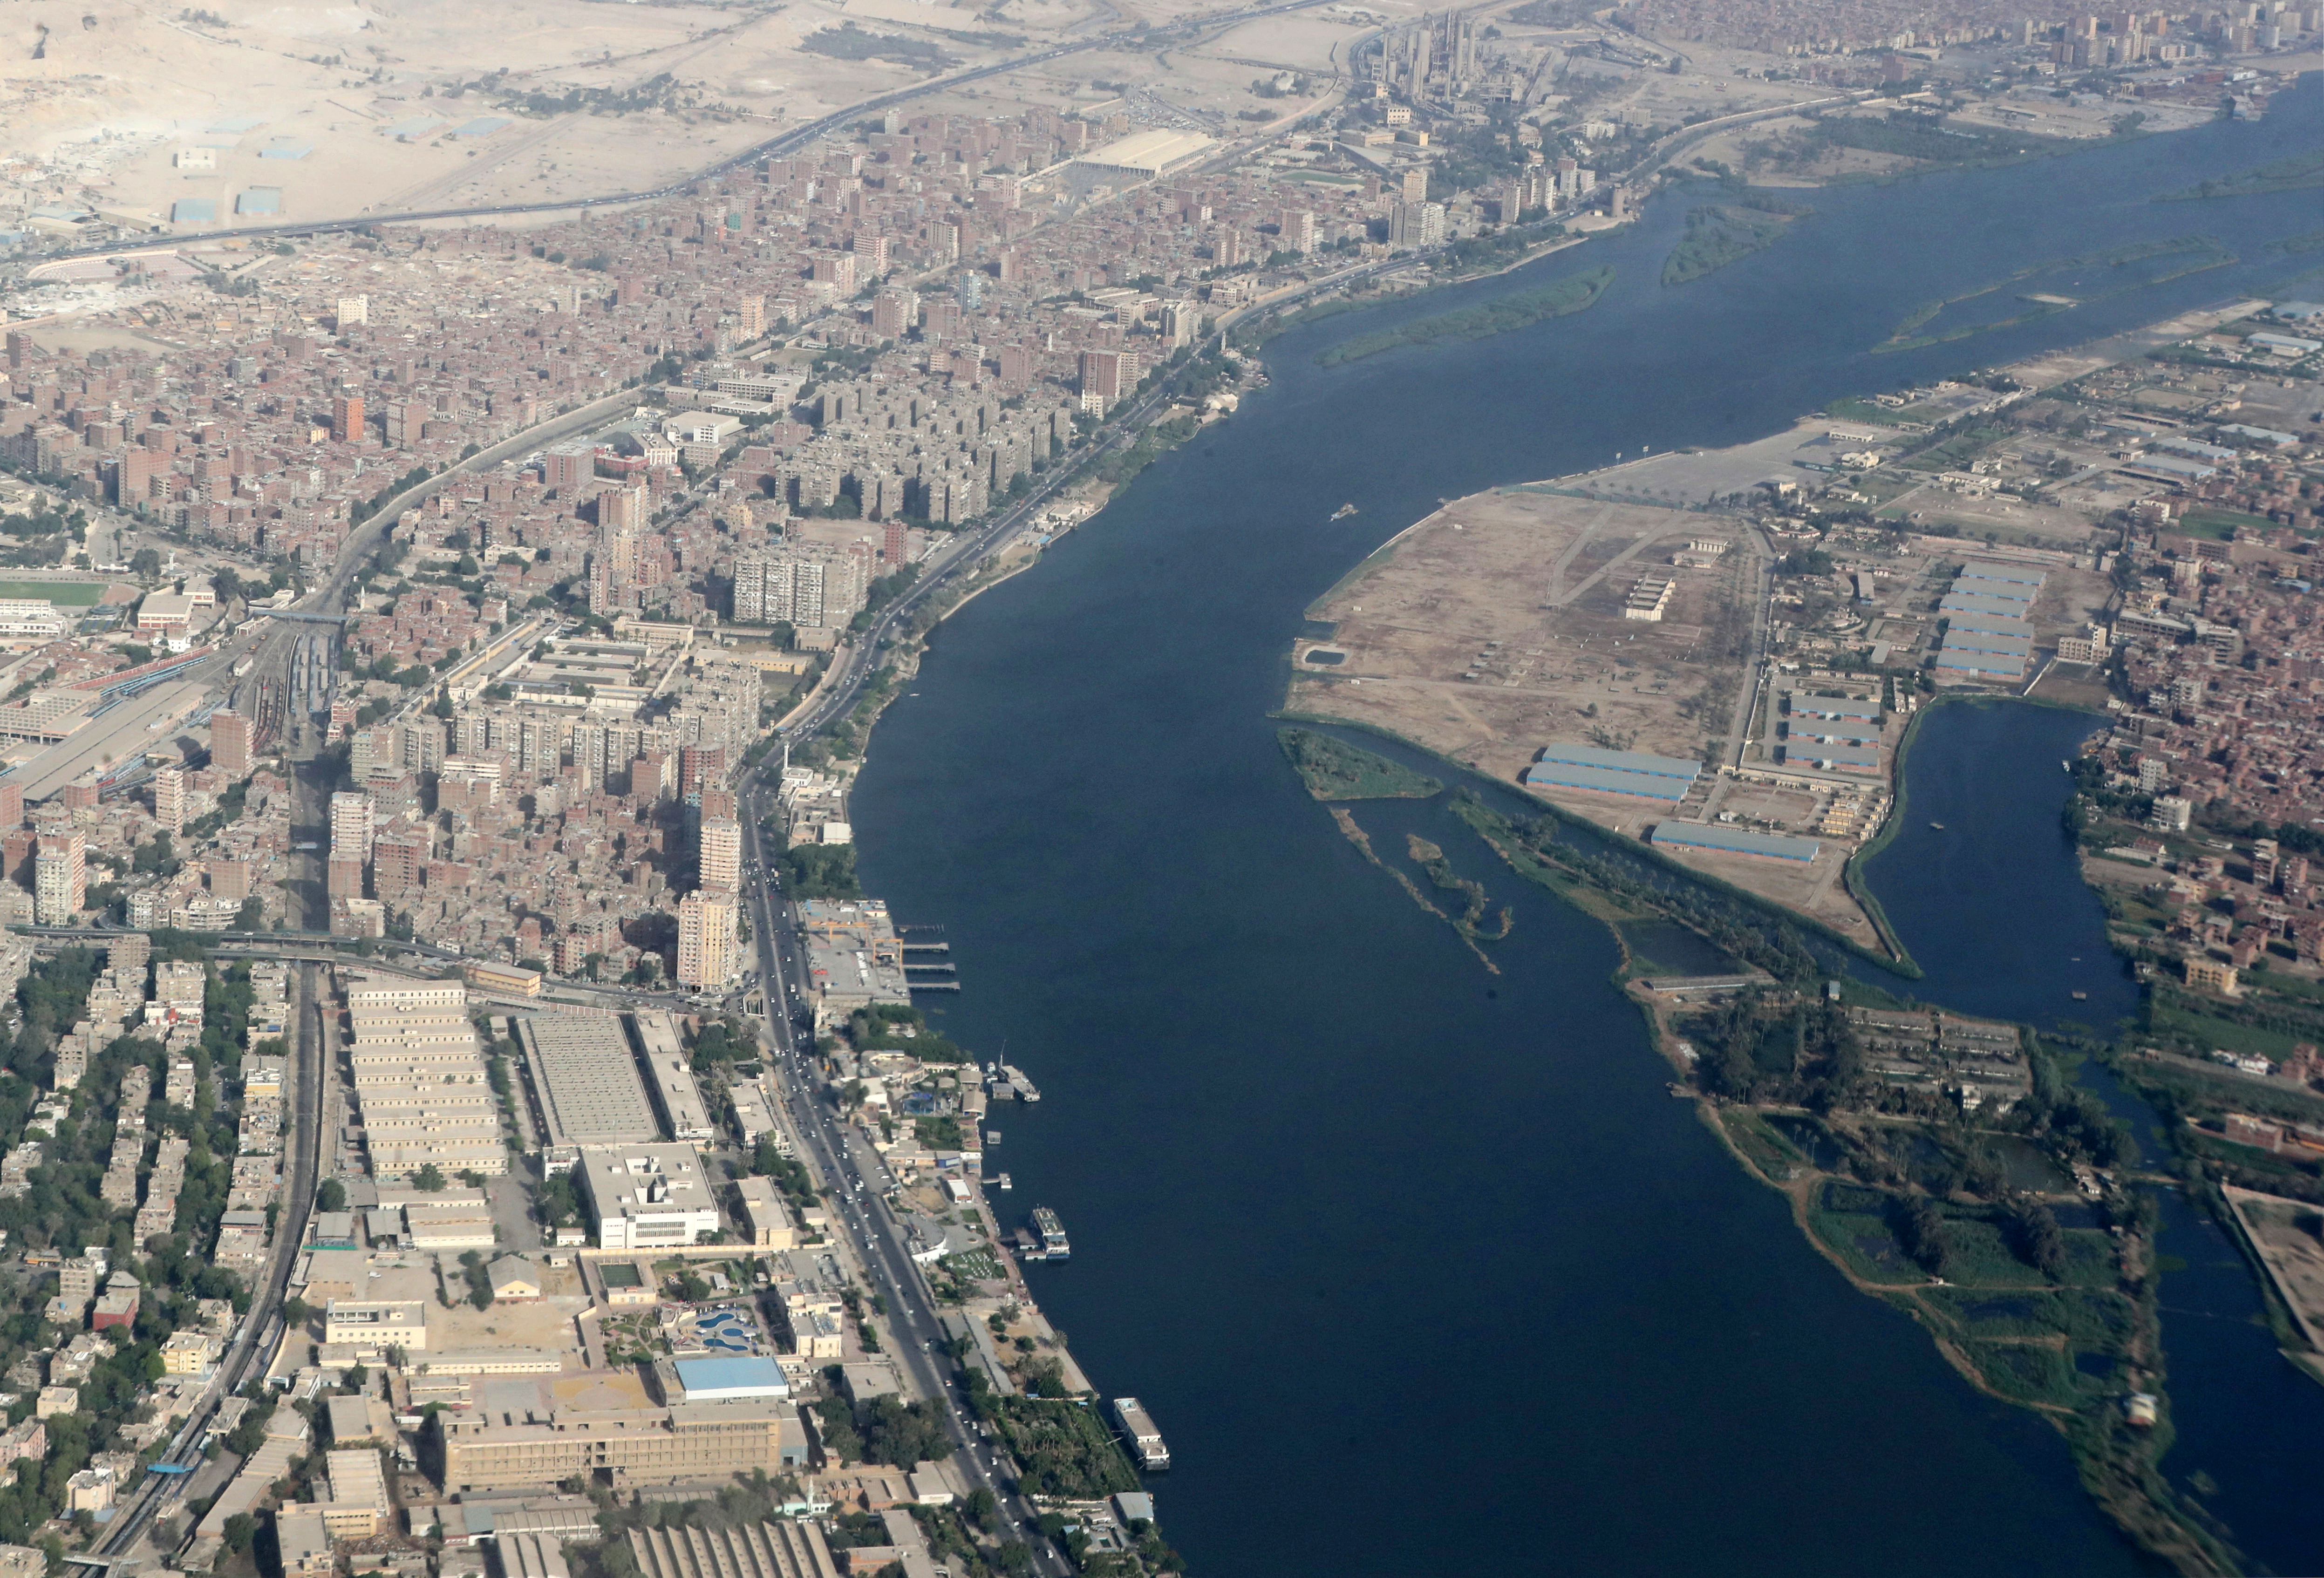 Una vista de los edificios alrededor del río Nilo, desde la ventana de un avión, sobre El Cairo, Egipto, el 20 de junio de 2020 (REUTERS/Mohamed Abd El Ghany)